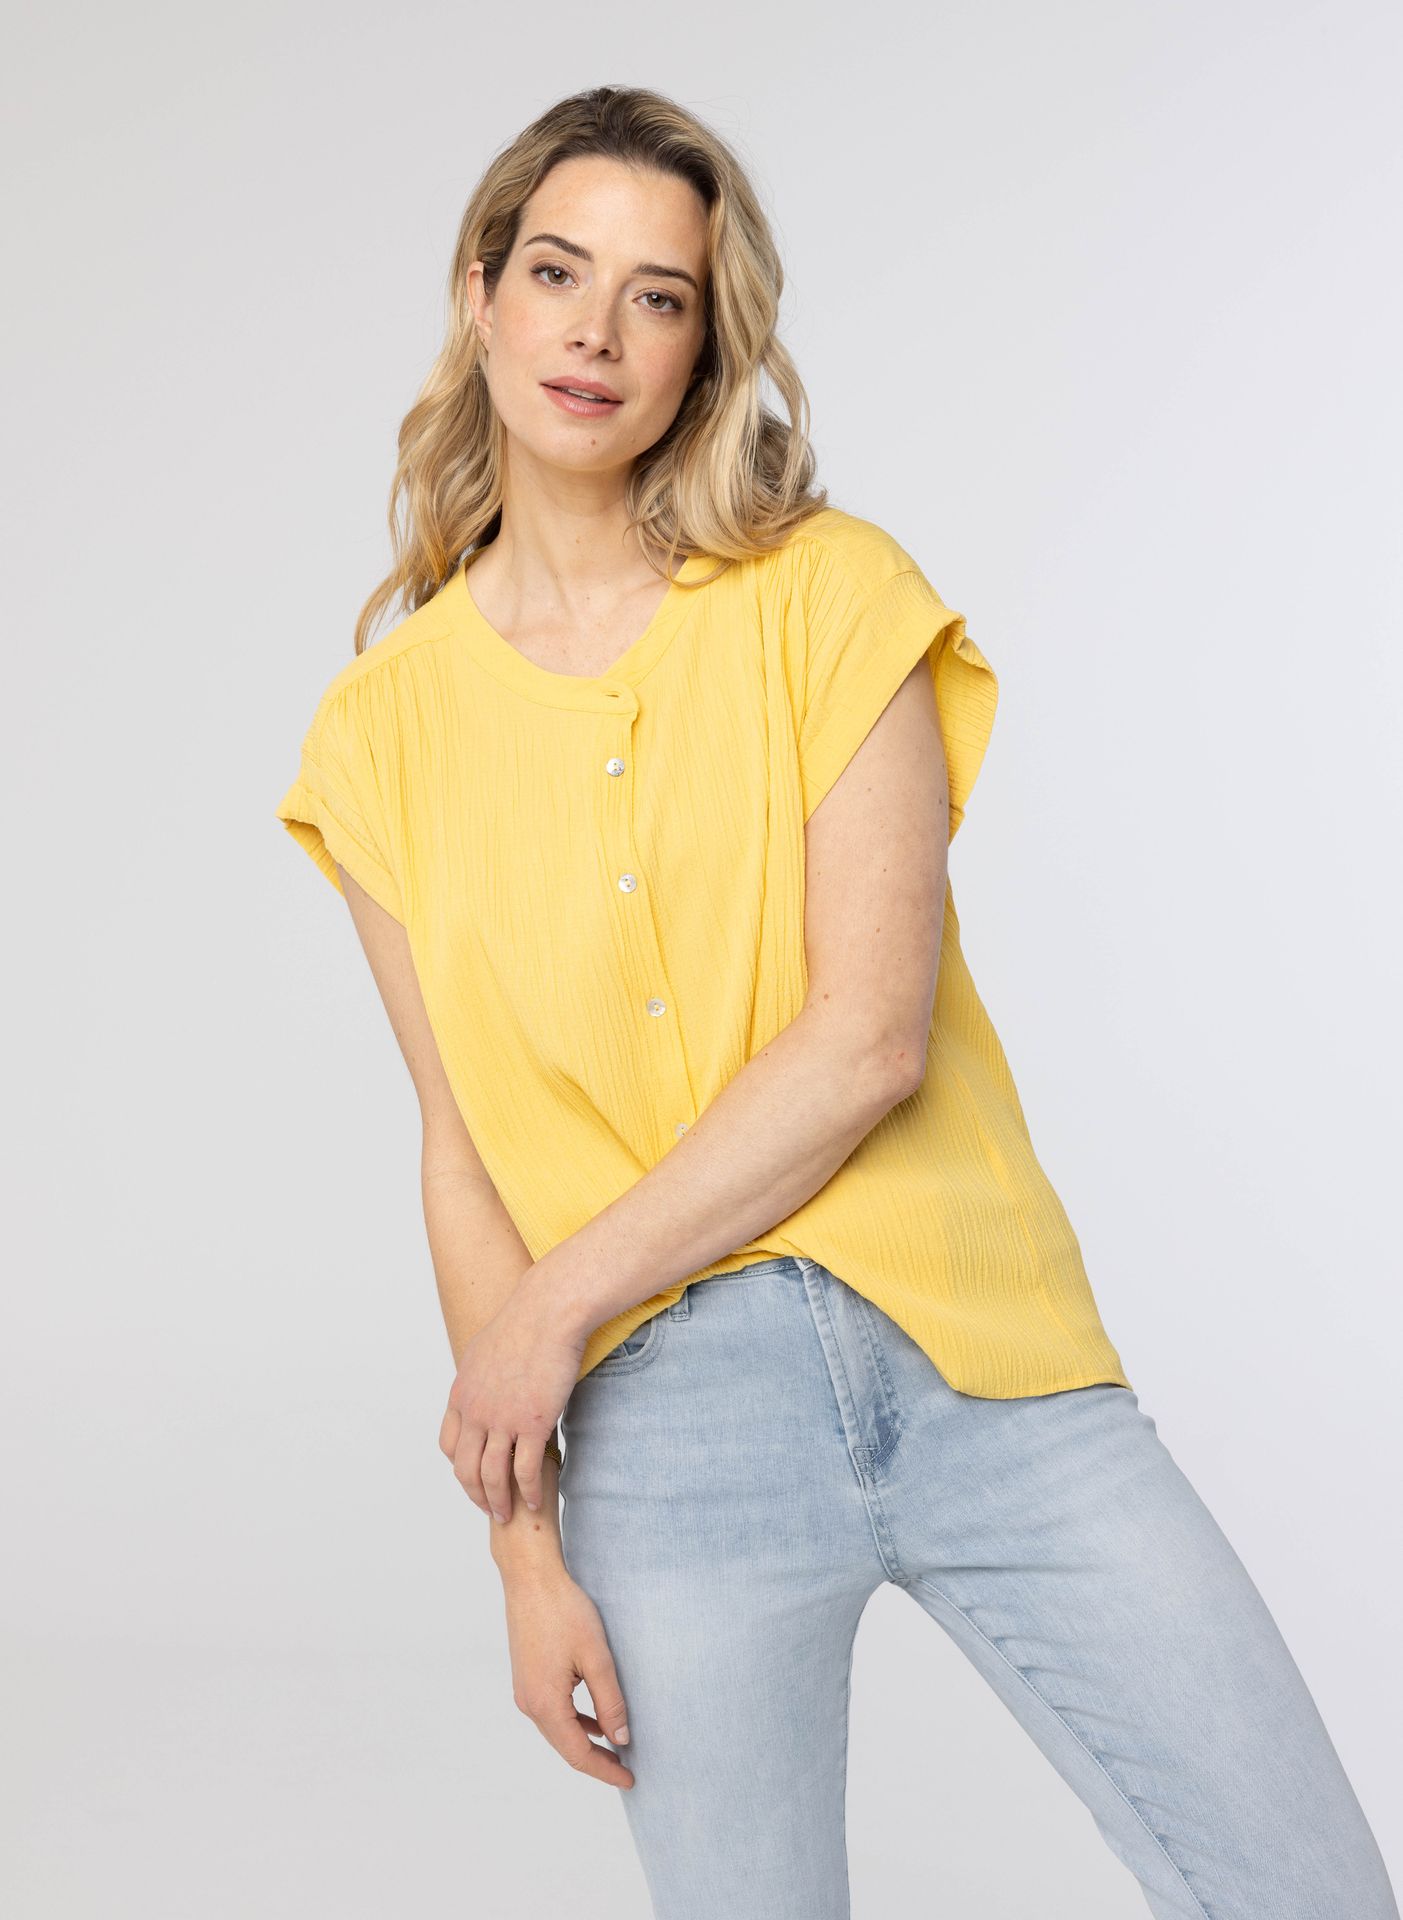 Norah Gele blouse yellow 213675-300